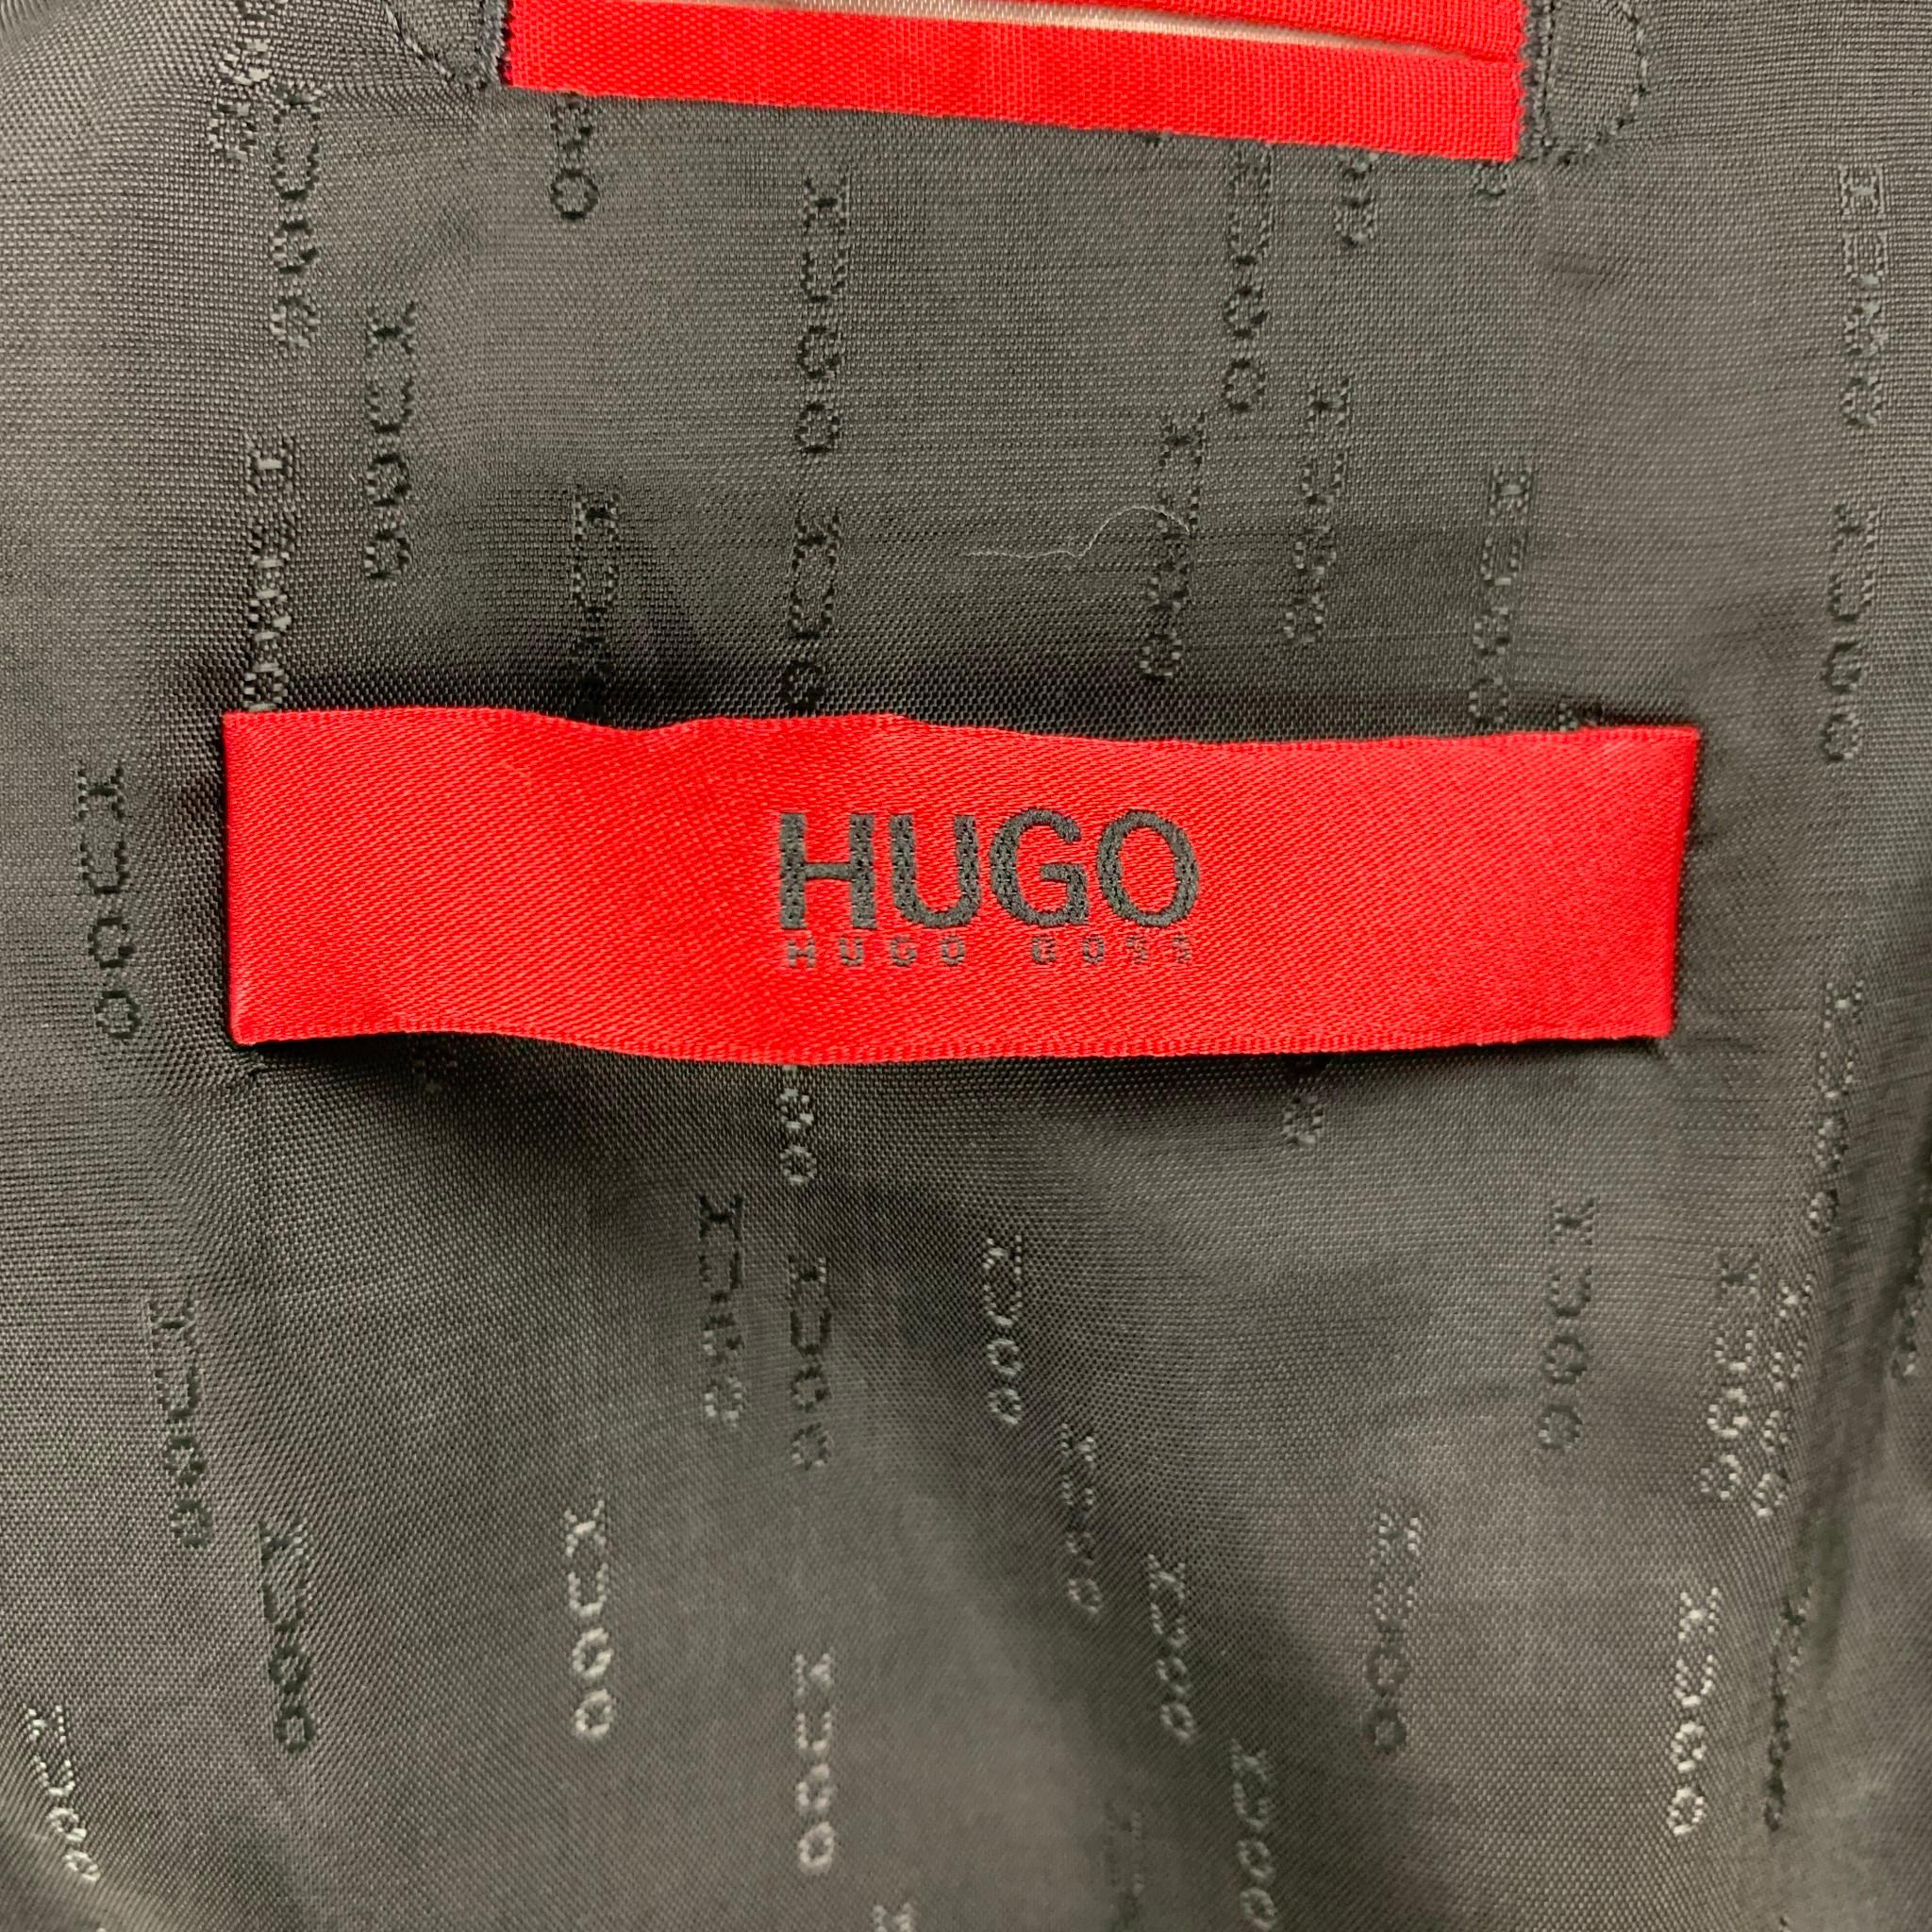 HUGO by HUGO BOSS Size 44 Black Virgin Wool Notch Lapel Suit 1